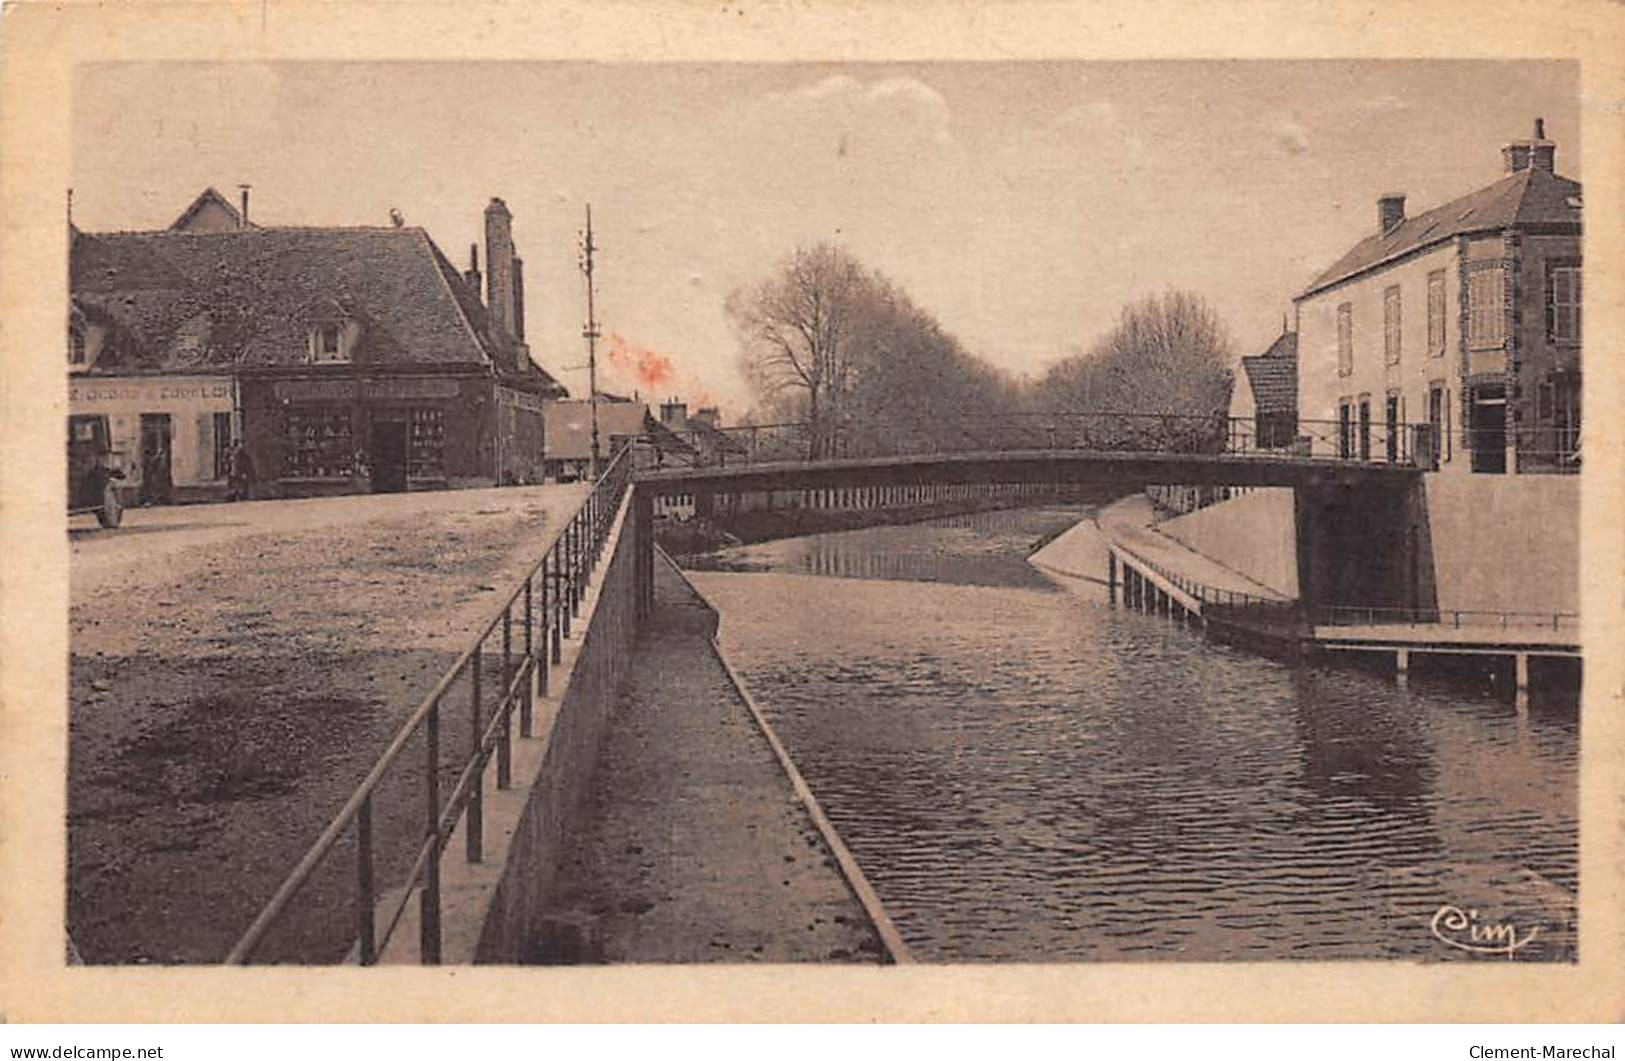 CHATILLON COLIGNY - Le Canal Et Le Pont Du Puyrault - état - Chatillon Coligny